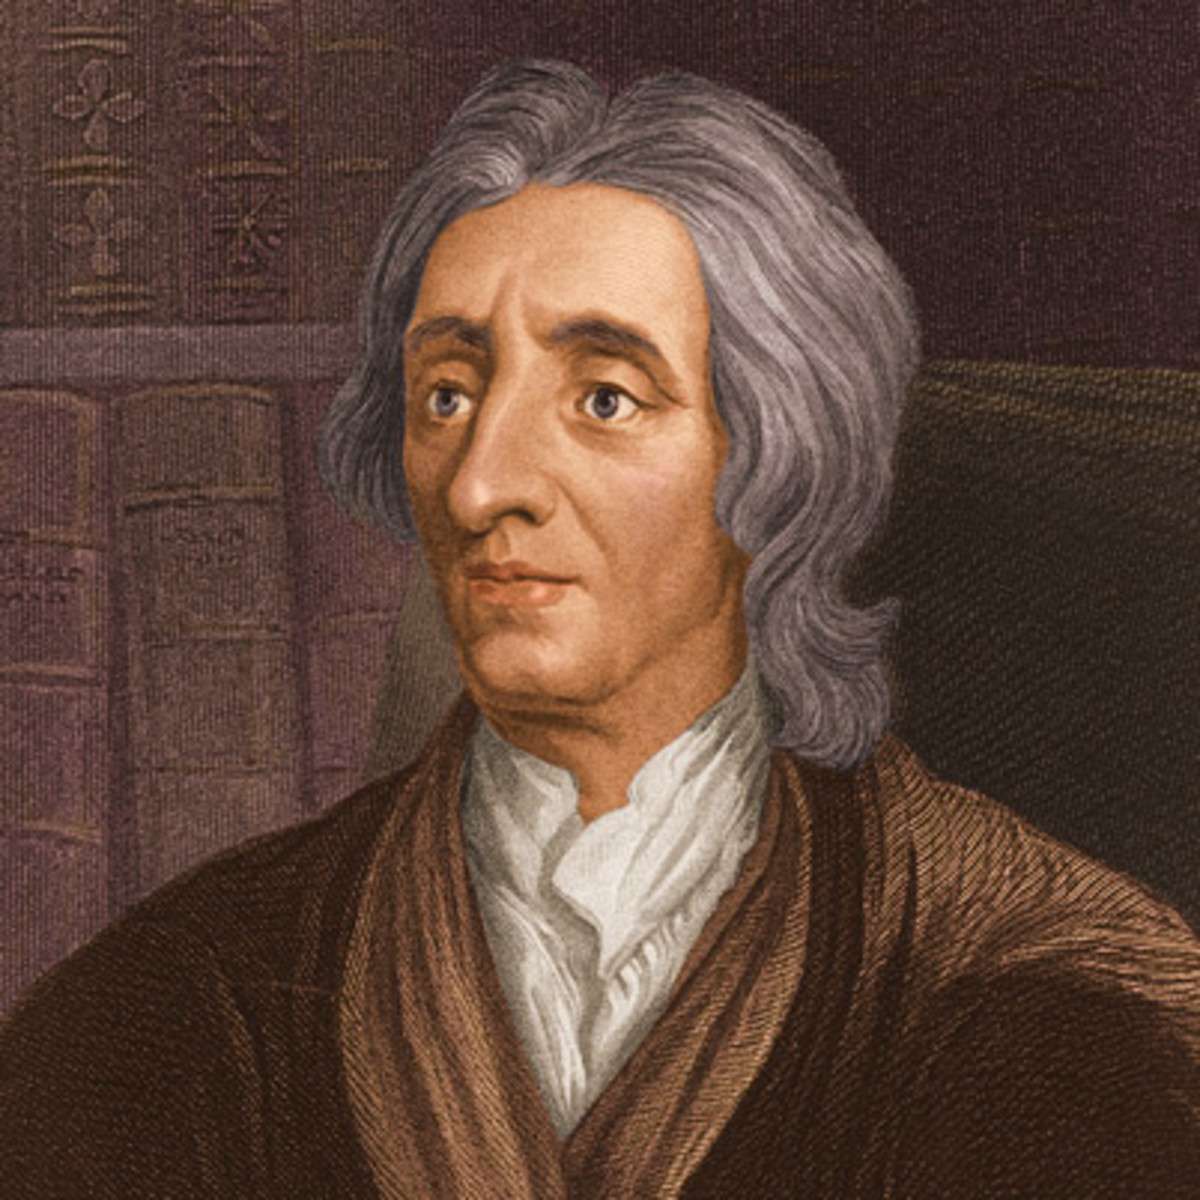 Ο Τζων Λοκ (John Locke, 29 Αυγούστου 1632 – 28 Οκτωβρίου 1704) ήταν Άγγλος φιλόσοφος και ιατρός, ο οποίος θεωρείται ένας από τους πλέον σημαίνοντες στοχαστές του Διαφωτισμού και είναι ευρύτερα γνωστός ως ο Πατέρας του Κλασικού Φιλελευθερισμού.